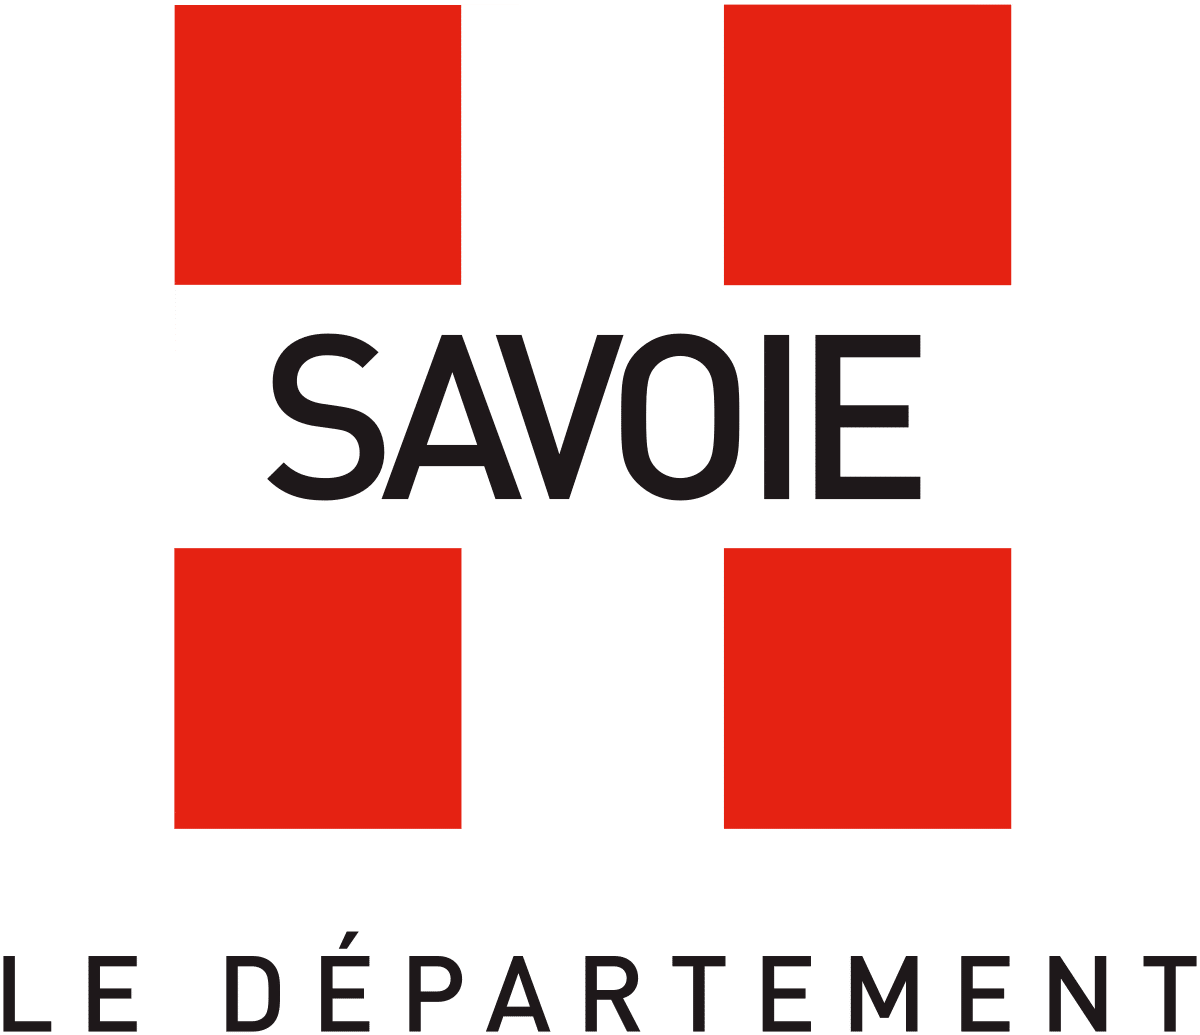 Département de la Savoie